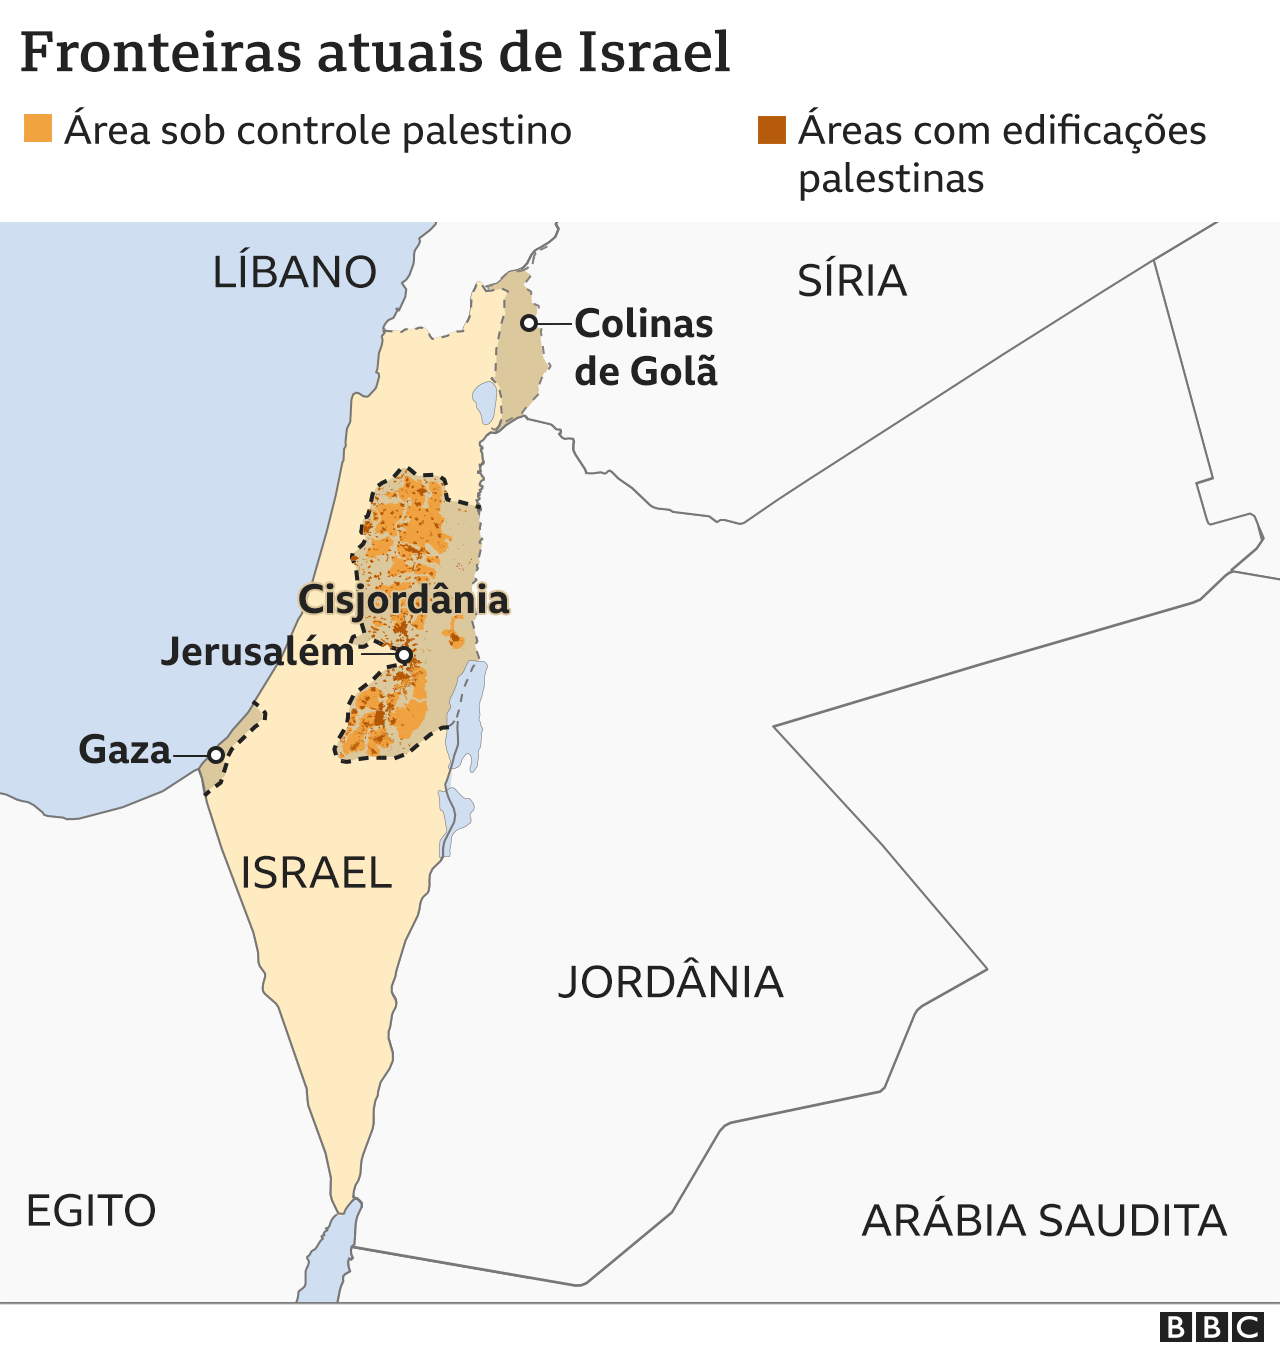 Desenho atual das fronteiras de Israel